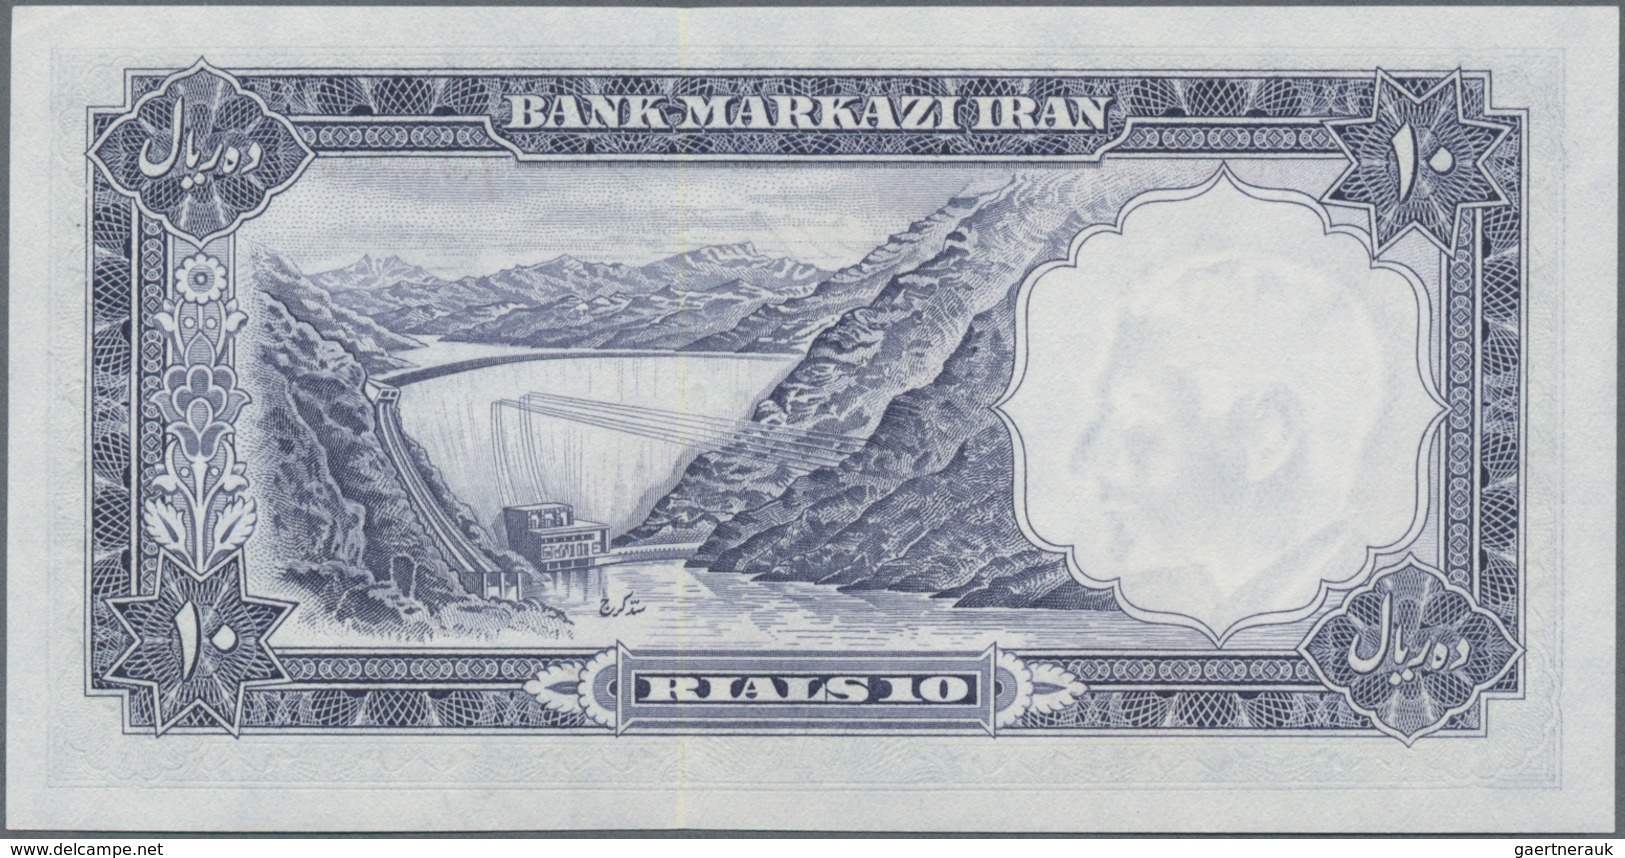 Iran: Bank Markazi Iran, set with 13 banknotes of the SH1340 (1961) series comprising 2x consecutive